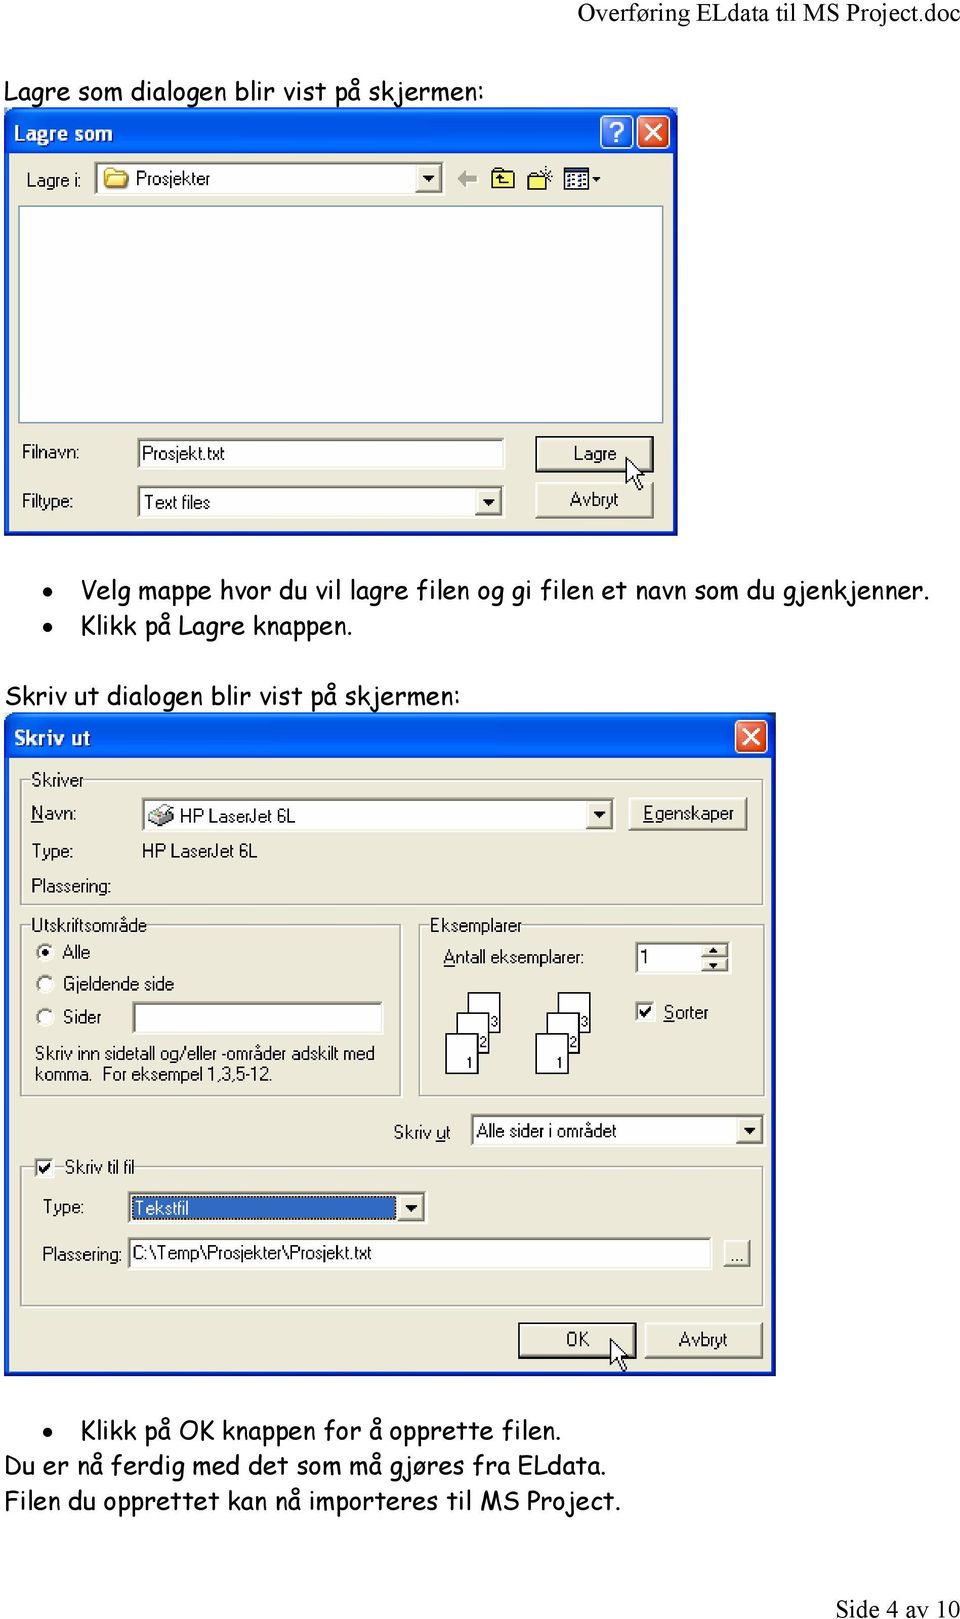 Skriv ut dialogen blir vist på skjermen: Klikk på OK knappen for å opprette filen.